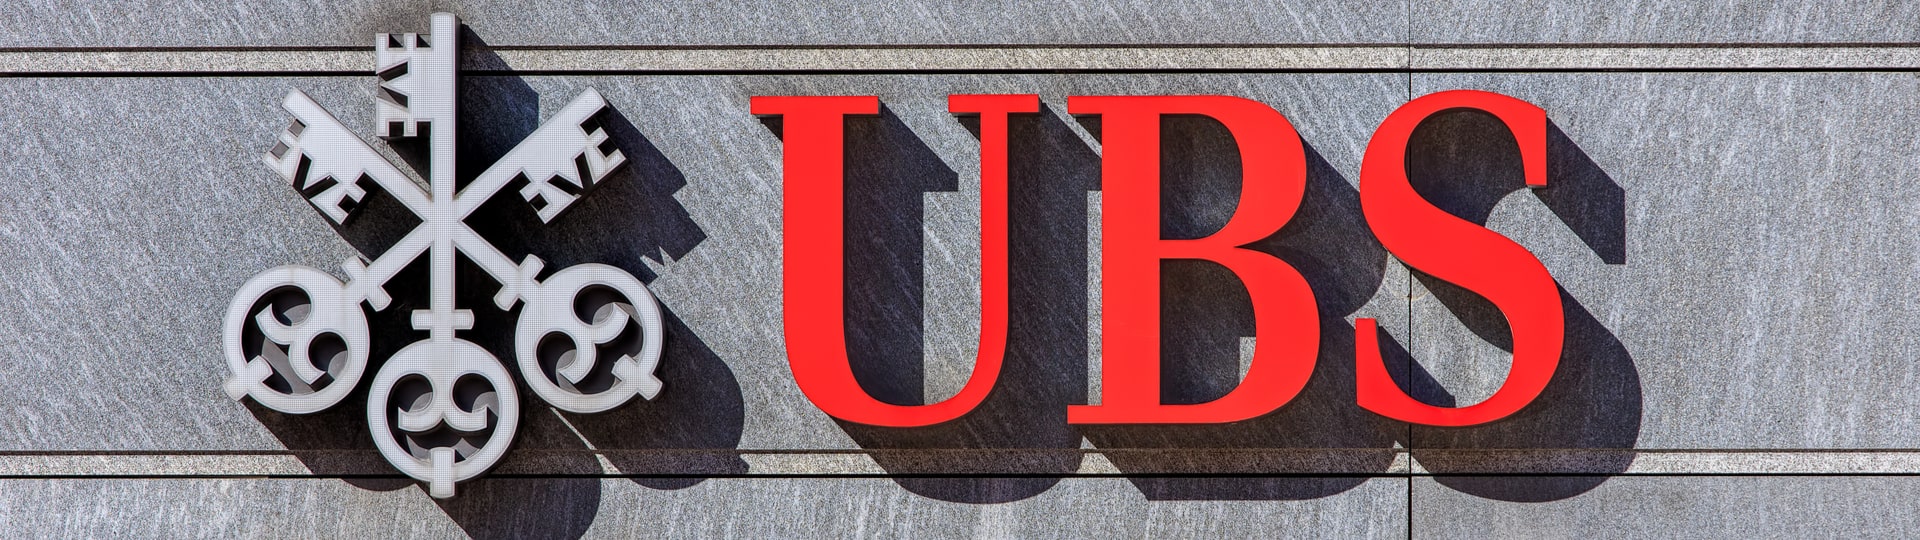 Největší švýcarská banka UBS má za loňský rok nejvyšší zisk za 15 let